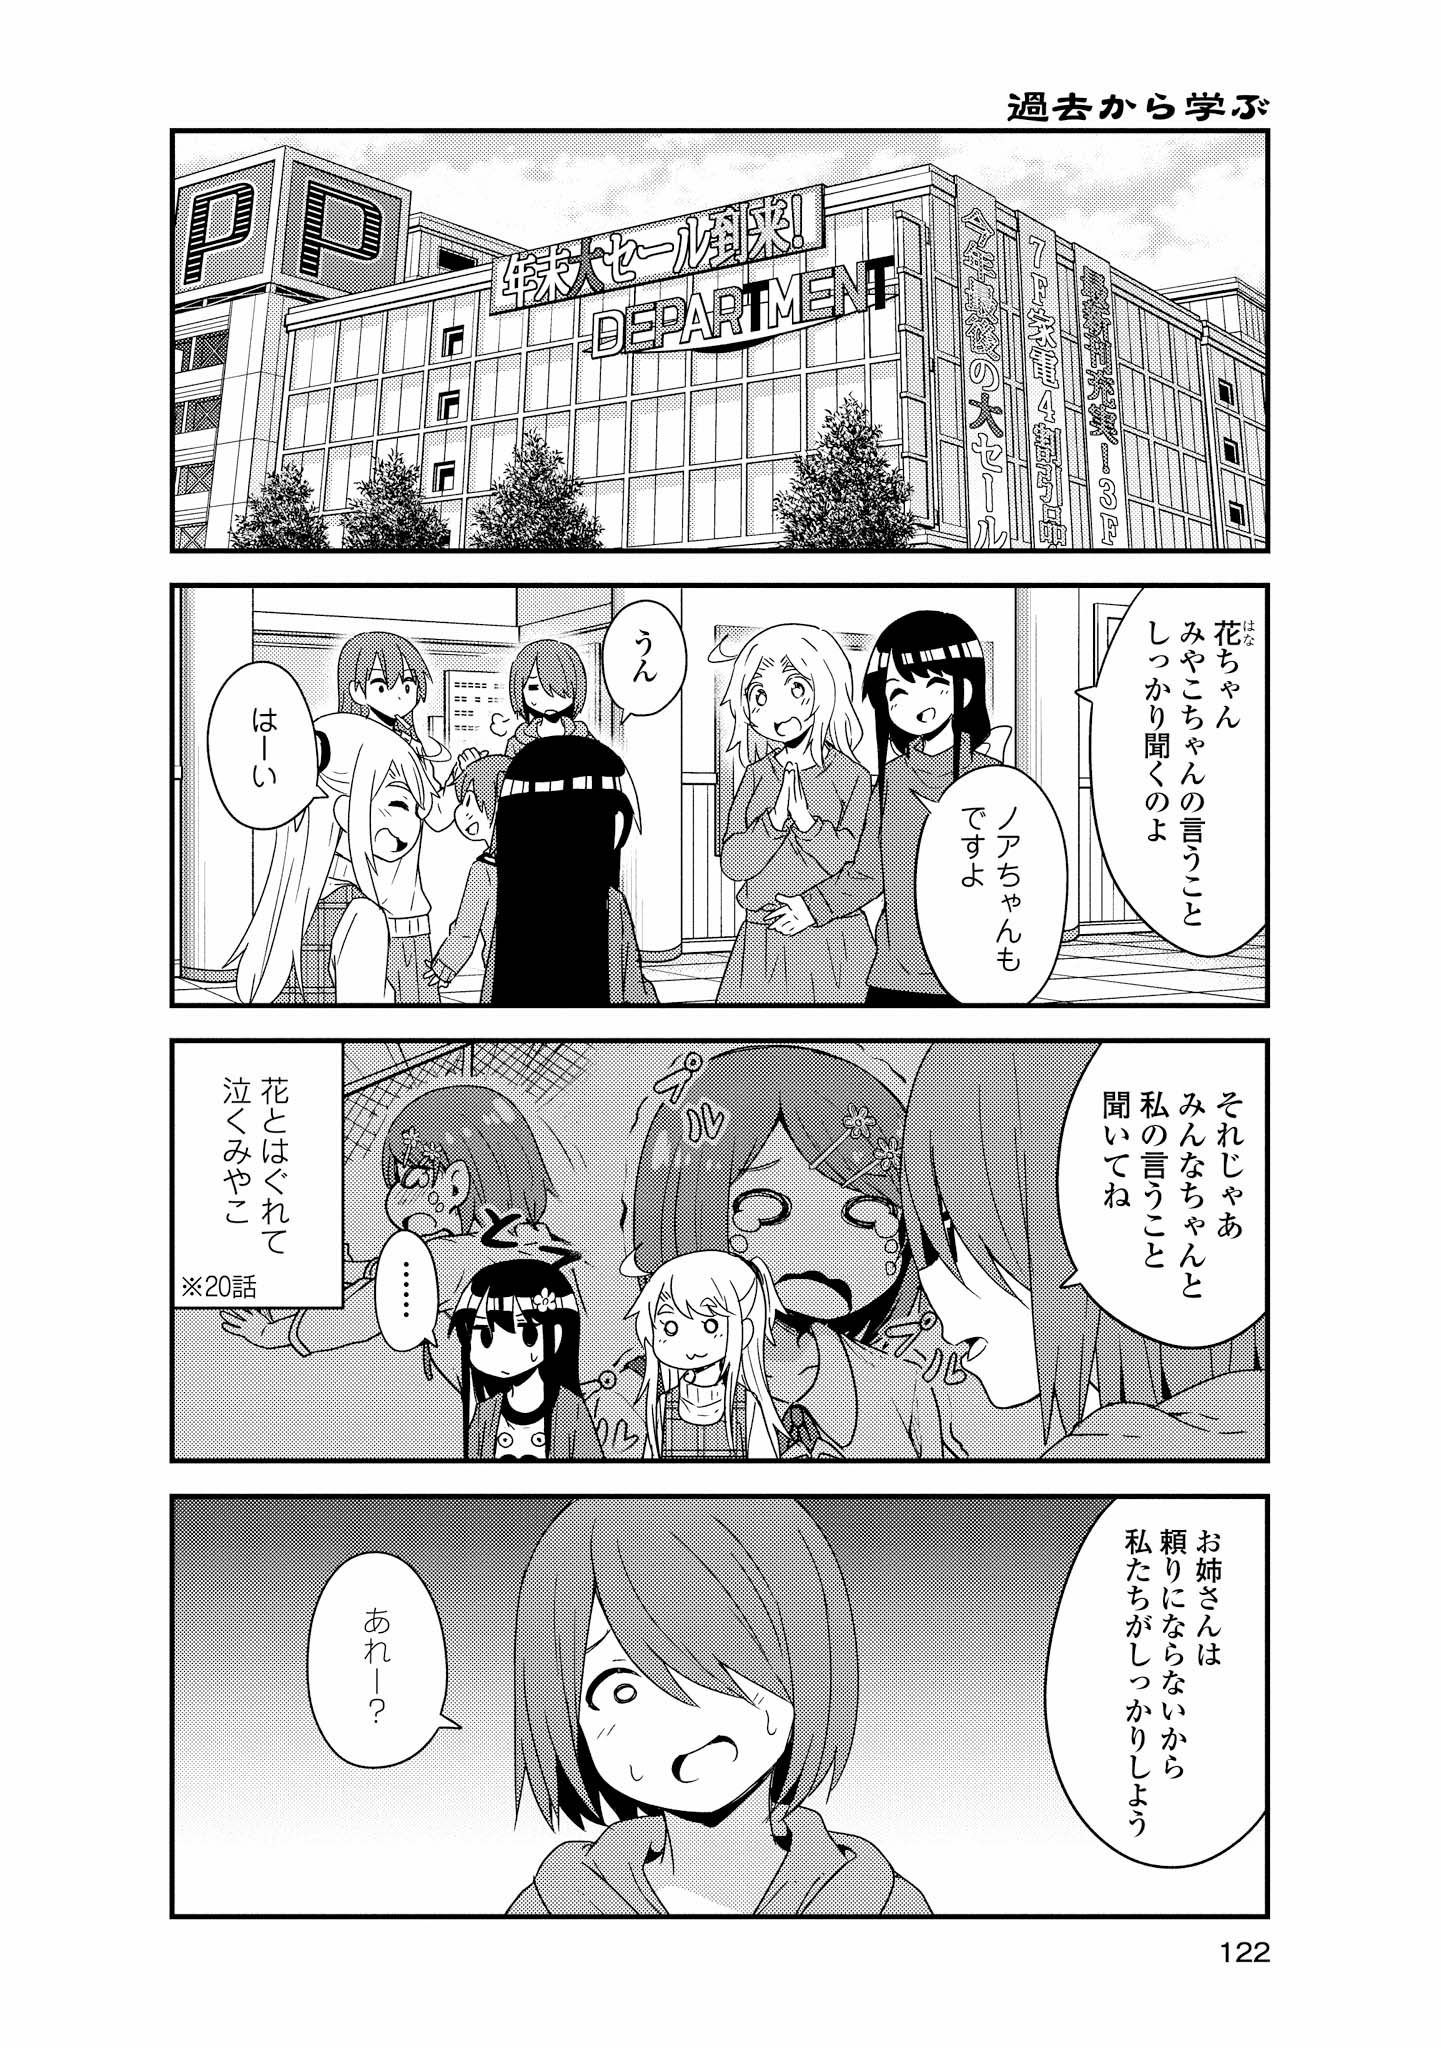 Watashi ni Tenshi ga Maiorita! - Chapter 43 - Page 4